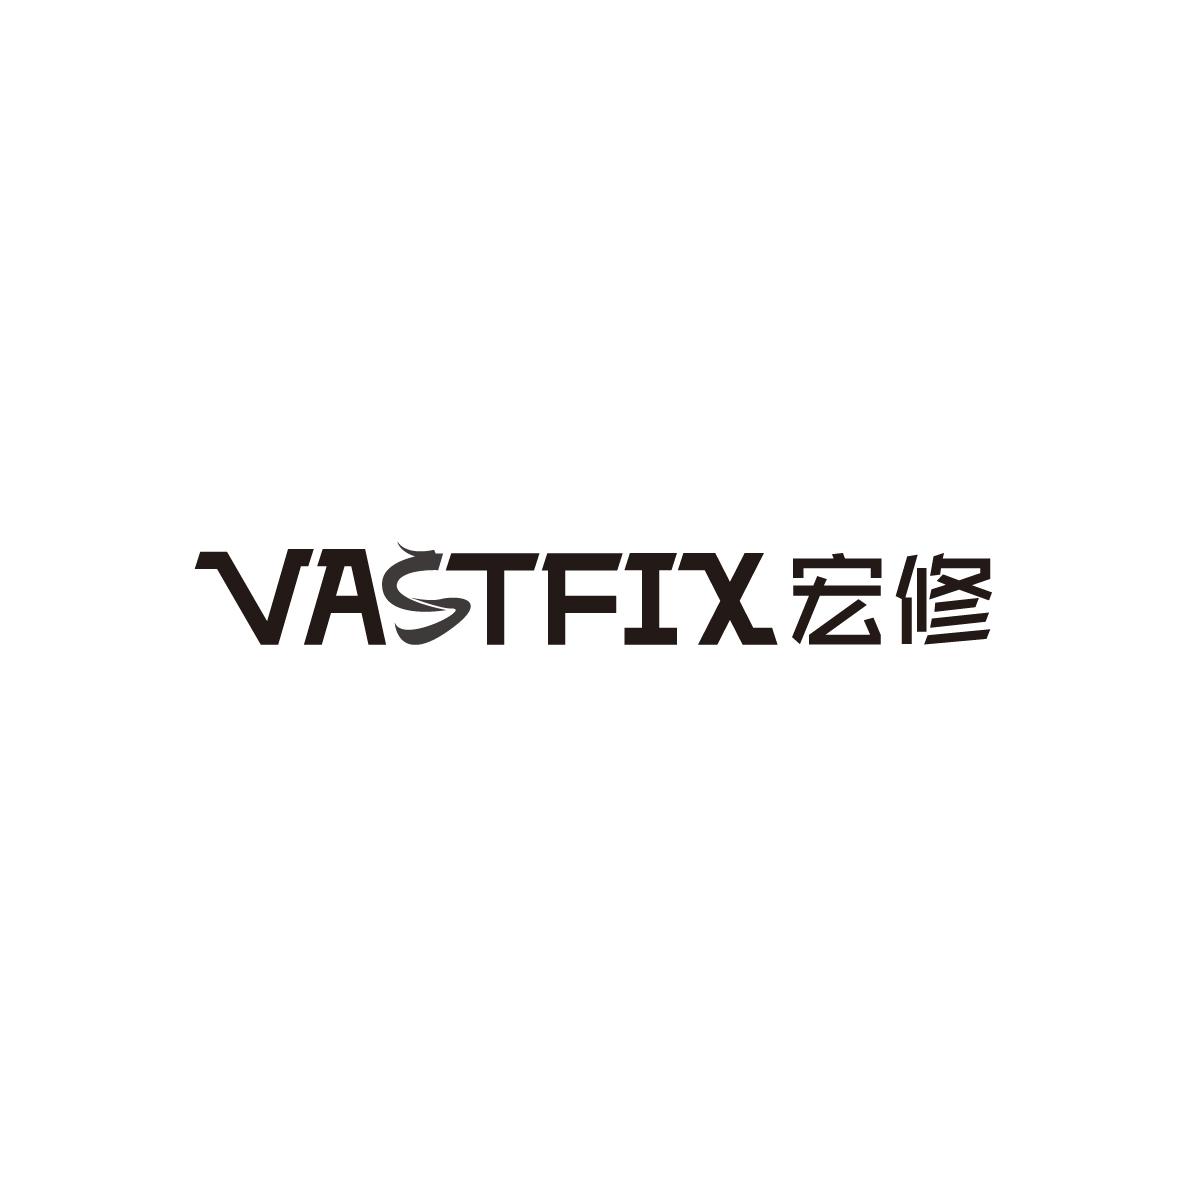 37类-建筑维修VASTFIX 宏修商标转让